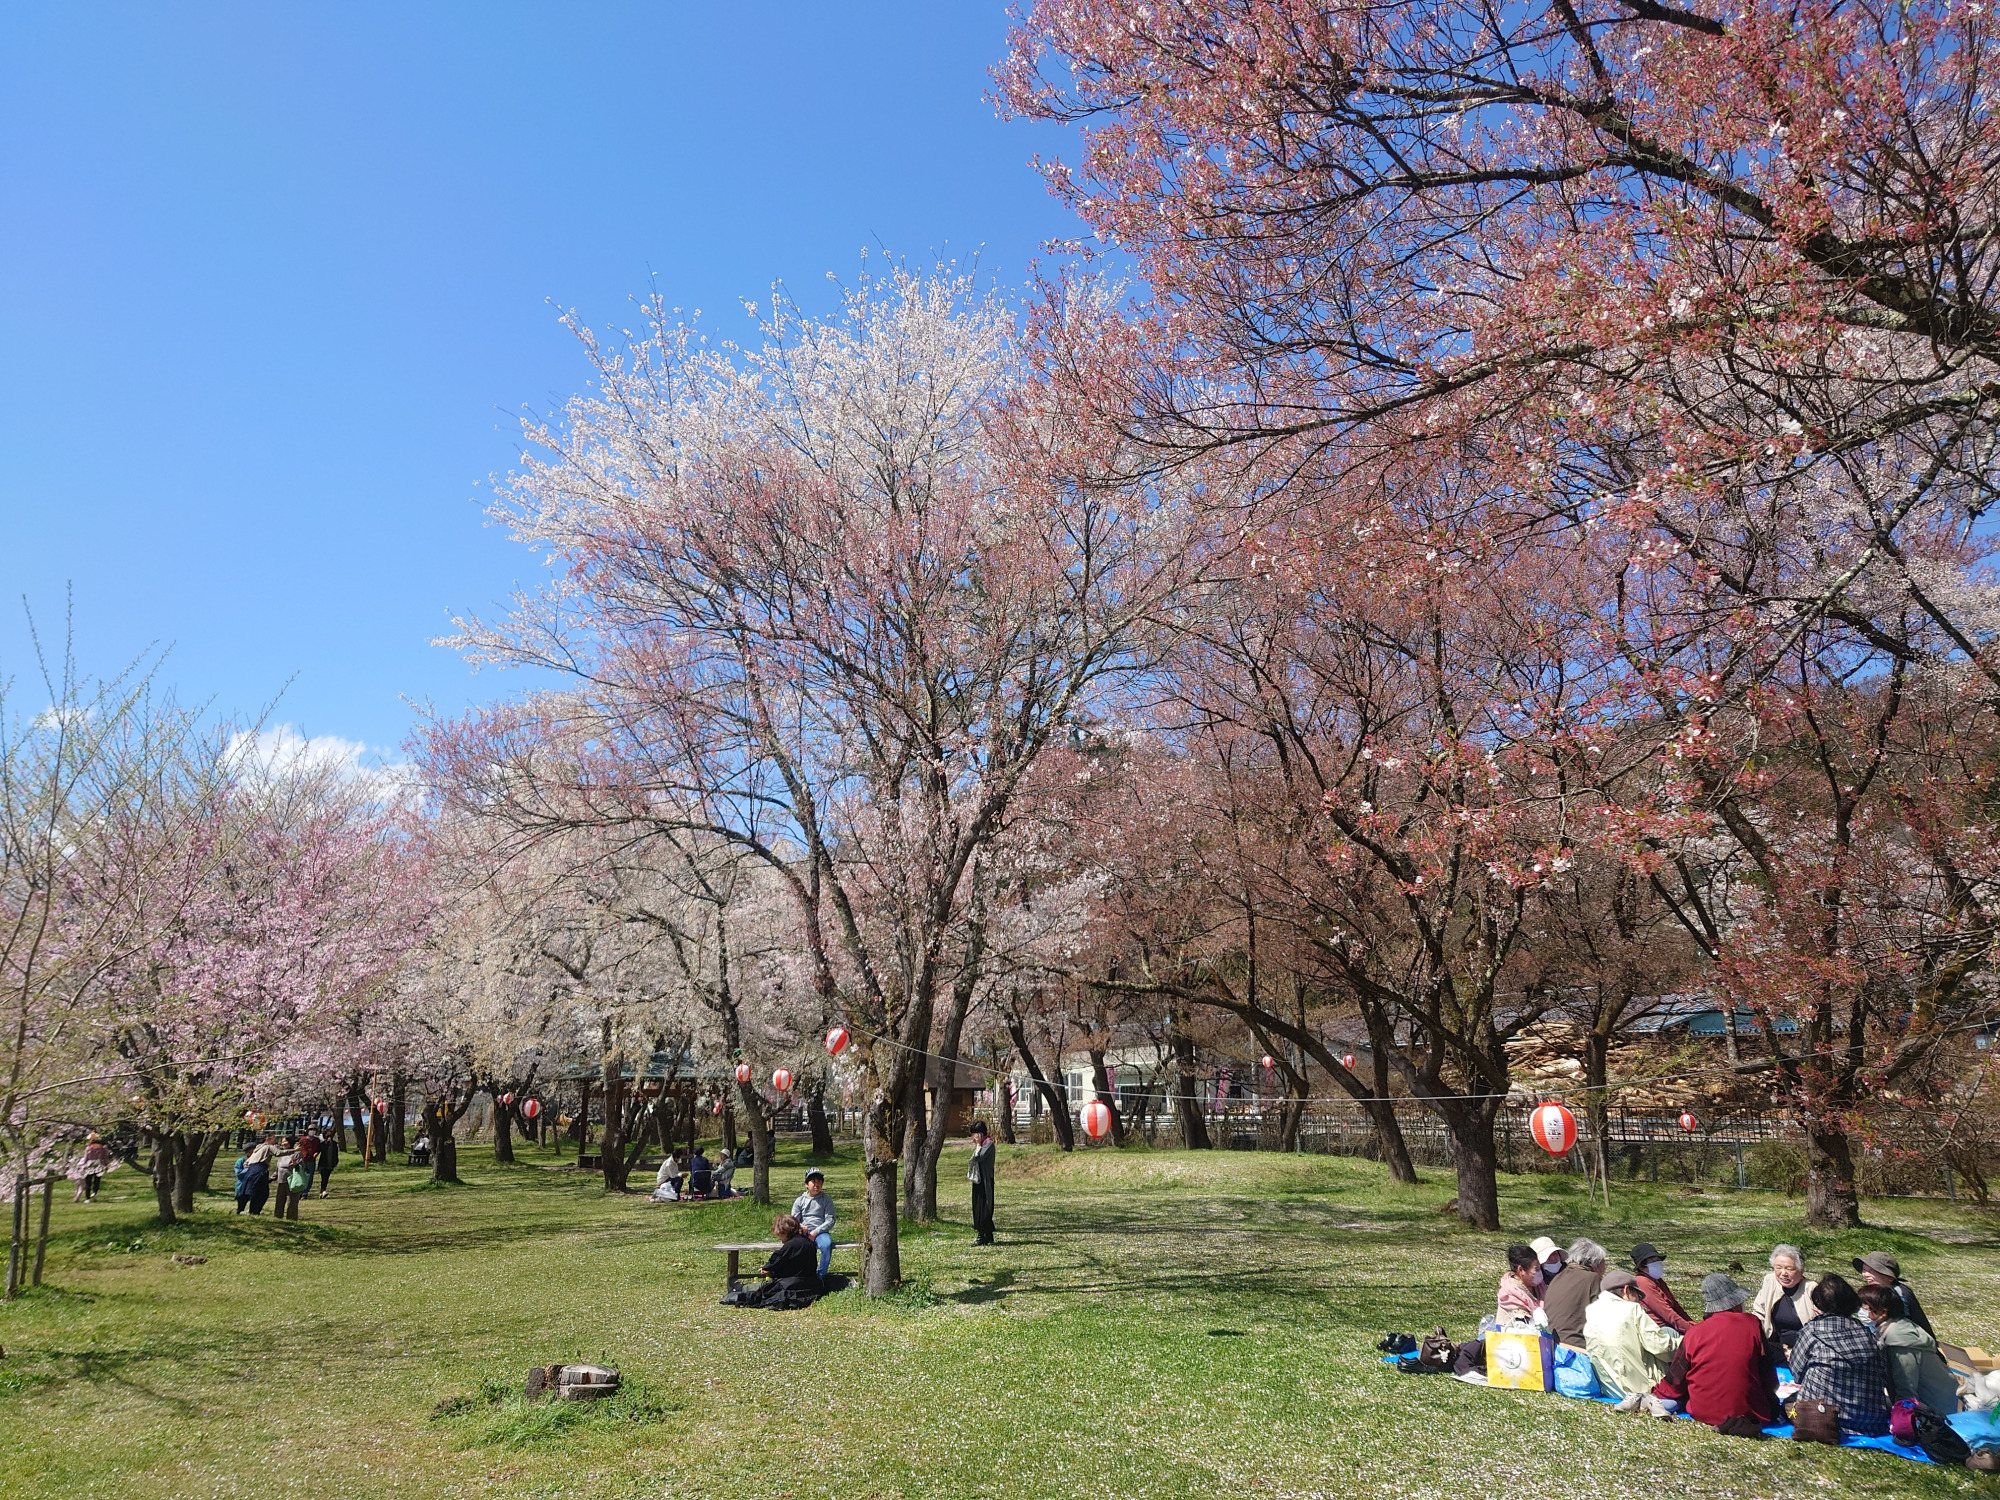 桜野公園は国府町民の憩いの場所でもあります。